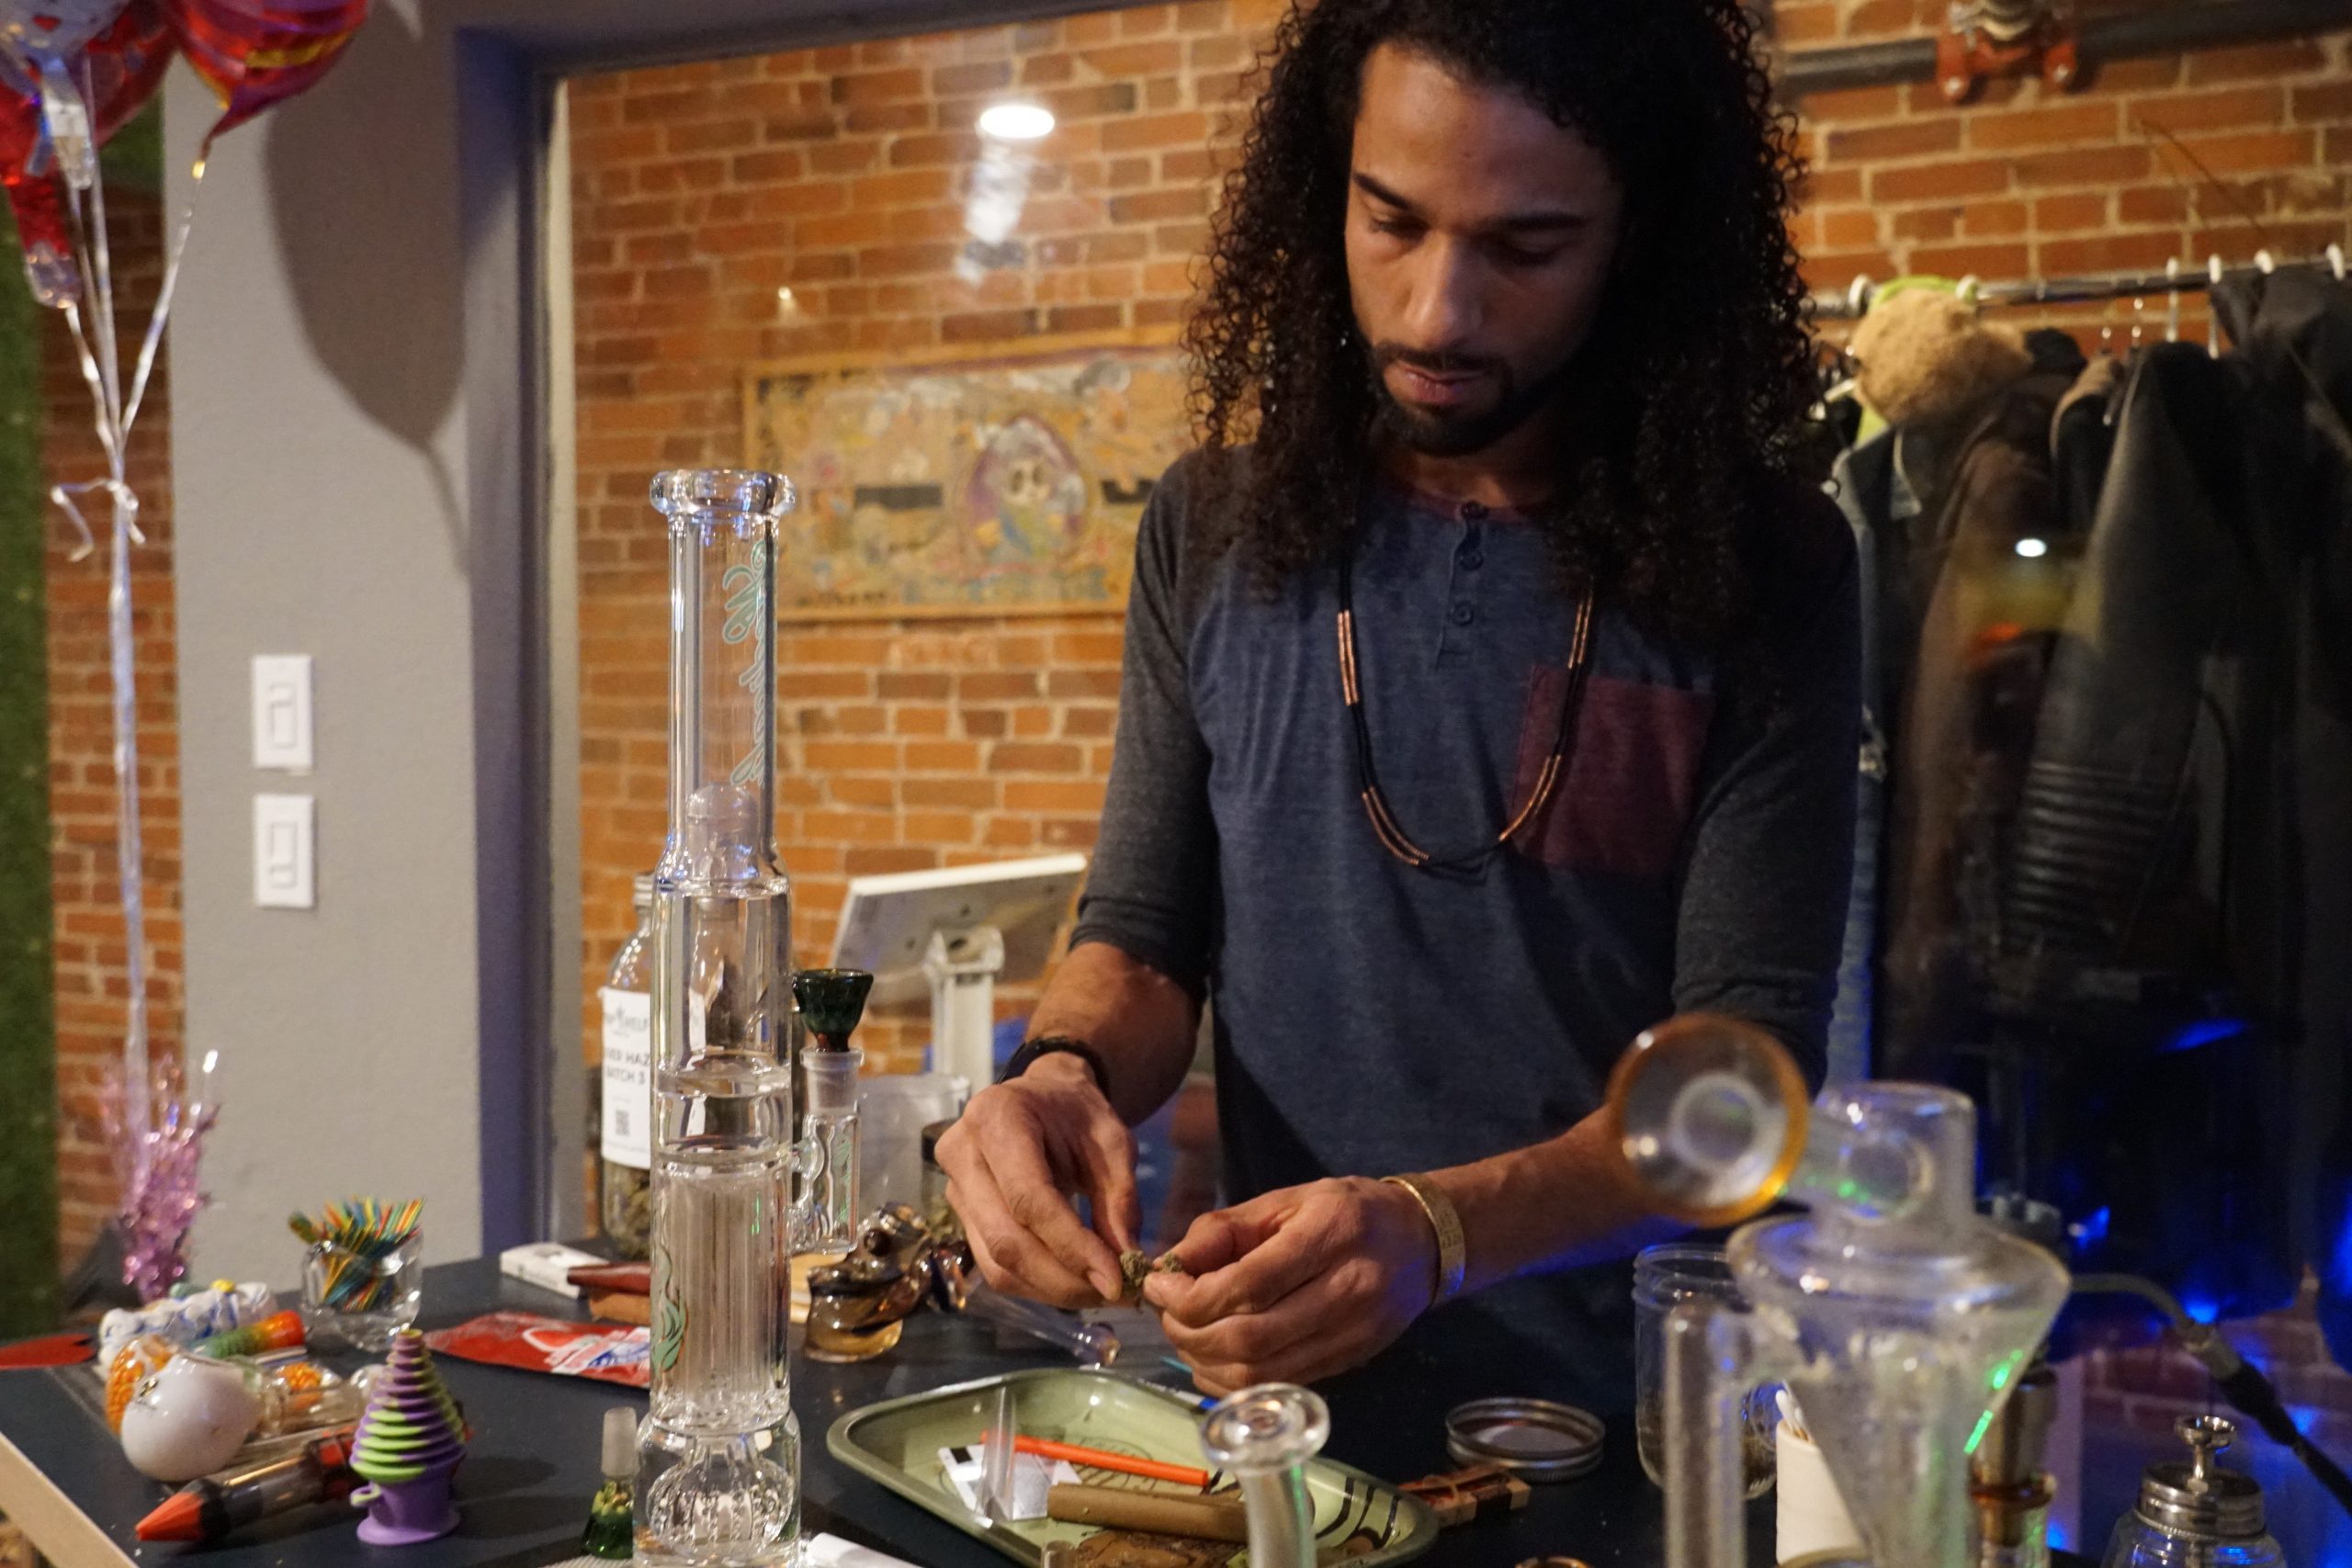 Meet Brennan England – St. Louis Cannabis Club Founder